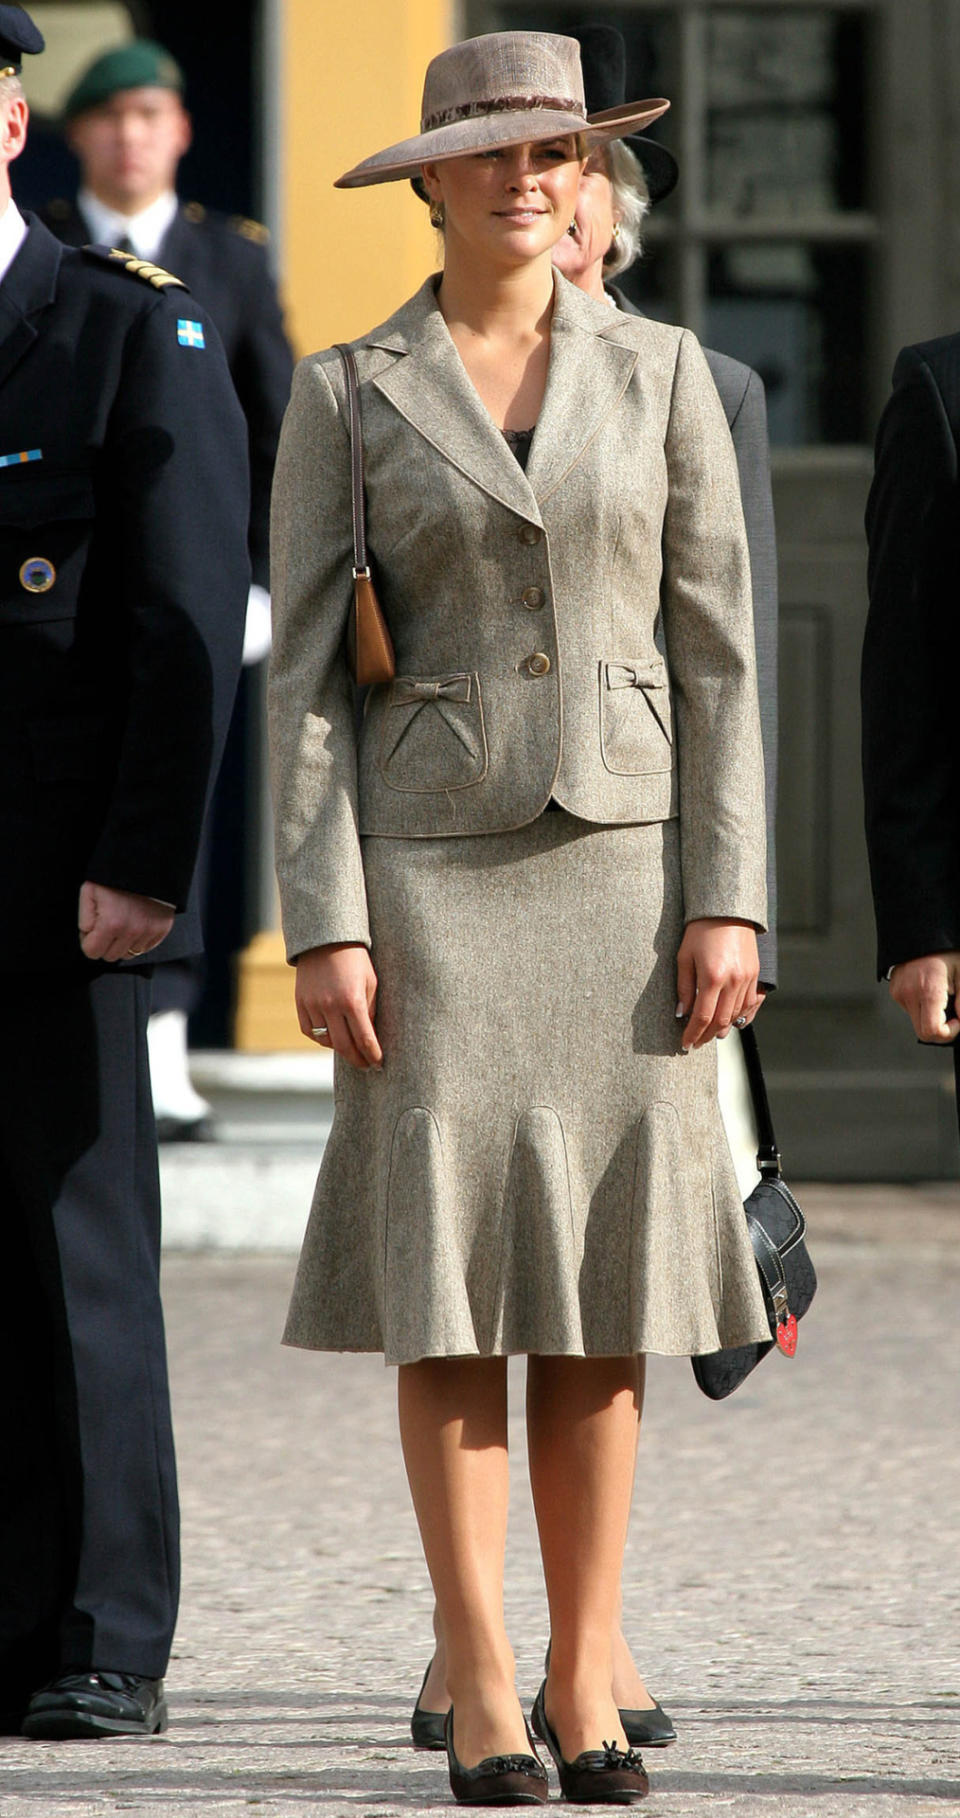 Graue Maus: Bei der Eröffnung der Legislaturperiode in Schweden ist meist die ganze Königsfamilie anwesend. 2006 konnte Madeleine dabei keine Fashionpunkte sammeln. Zu altbacken und bieder wirkt dieses graue Kostüm.  